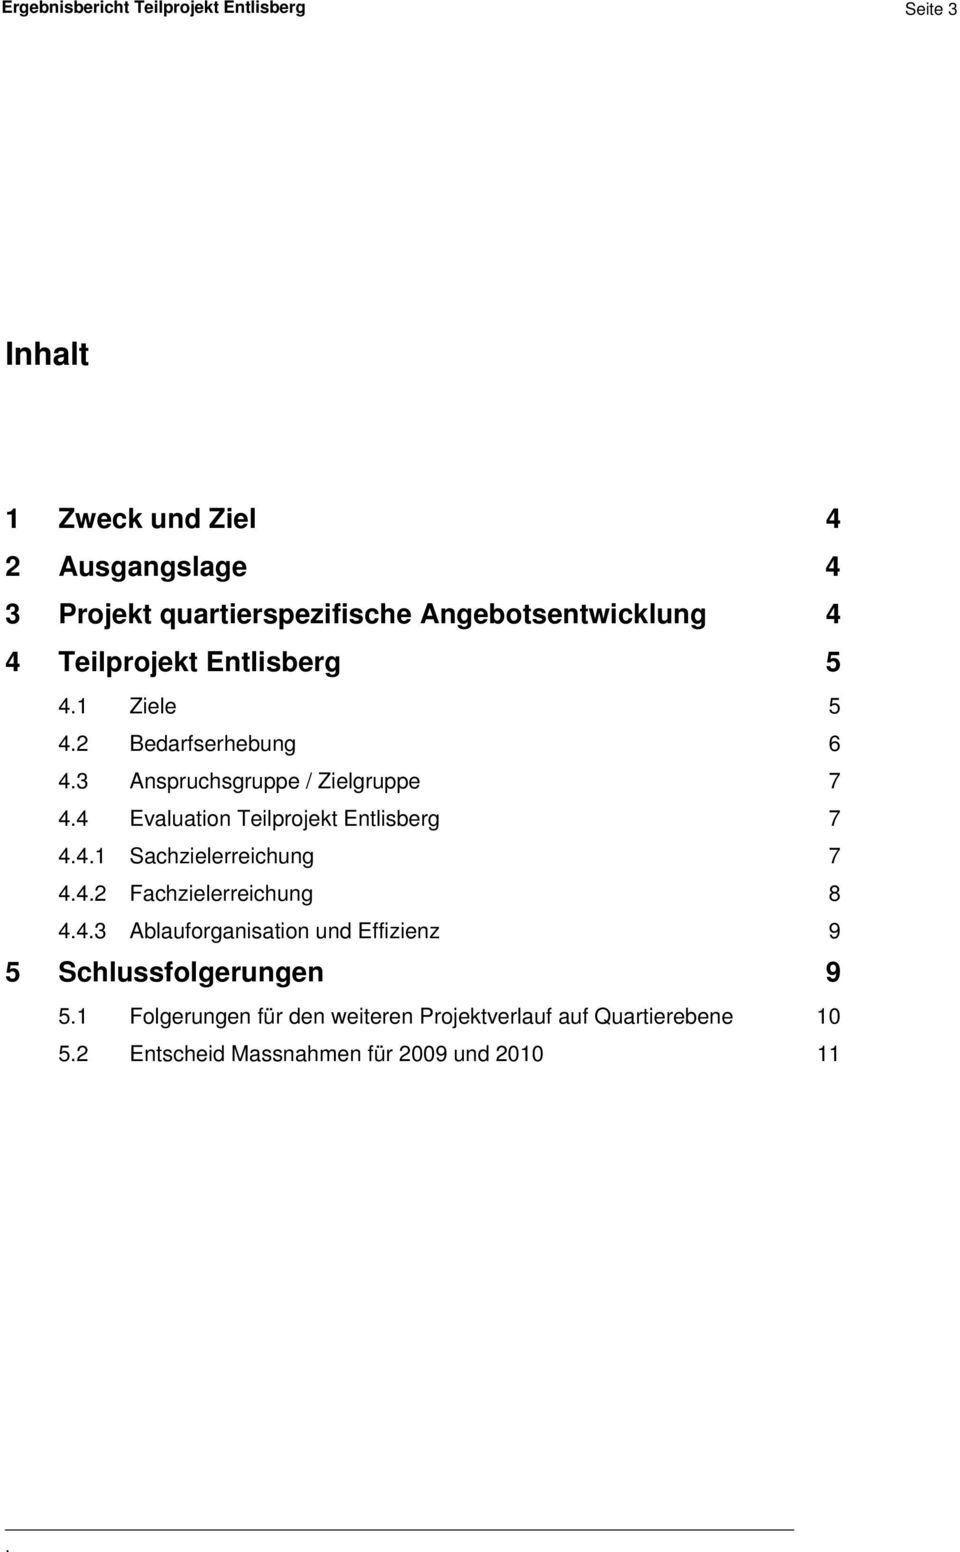 Teilprojekt Entlisberg 7 441 Sachzielerreichung 7 442 Fachzielerreichung 8 443 Ablauforganisation und Effizienz 9